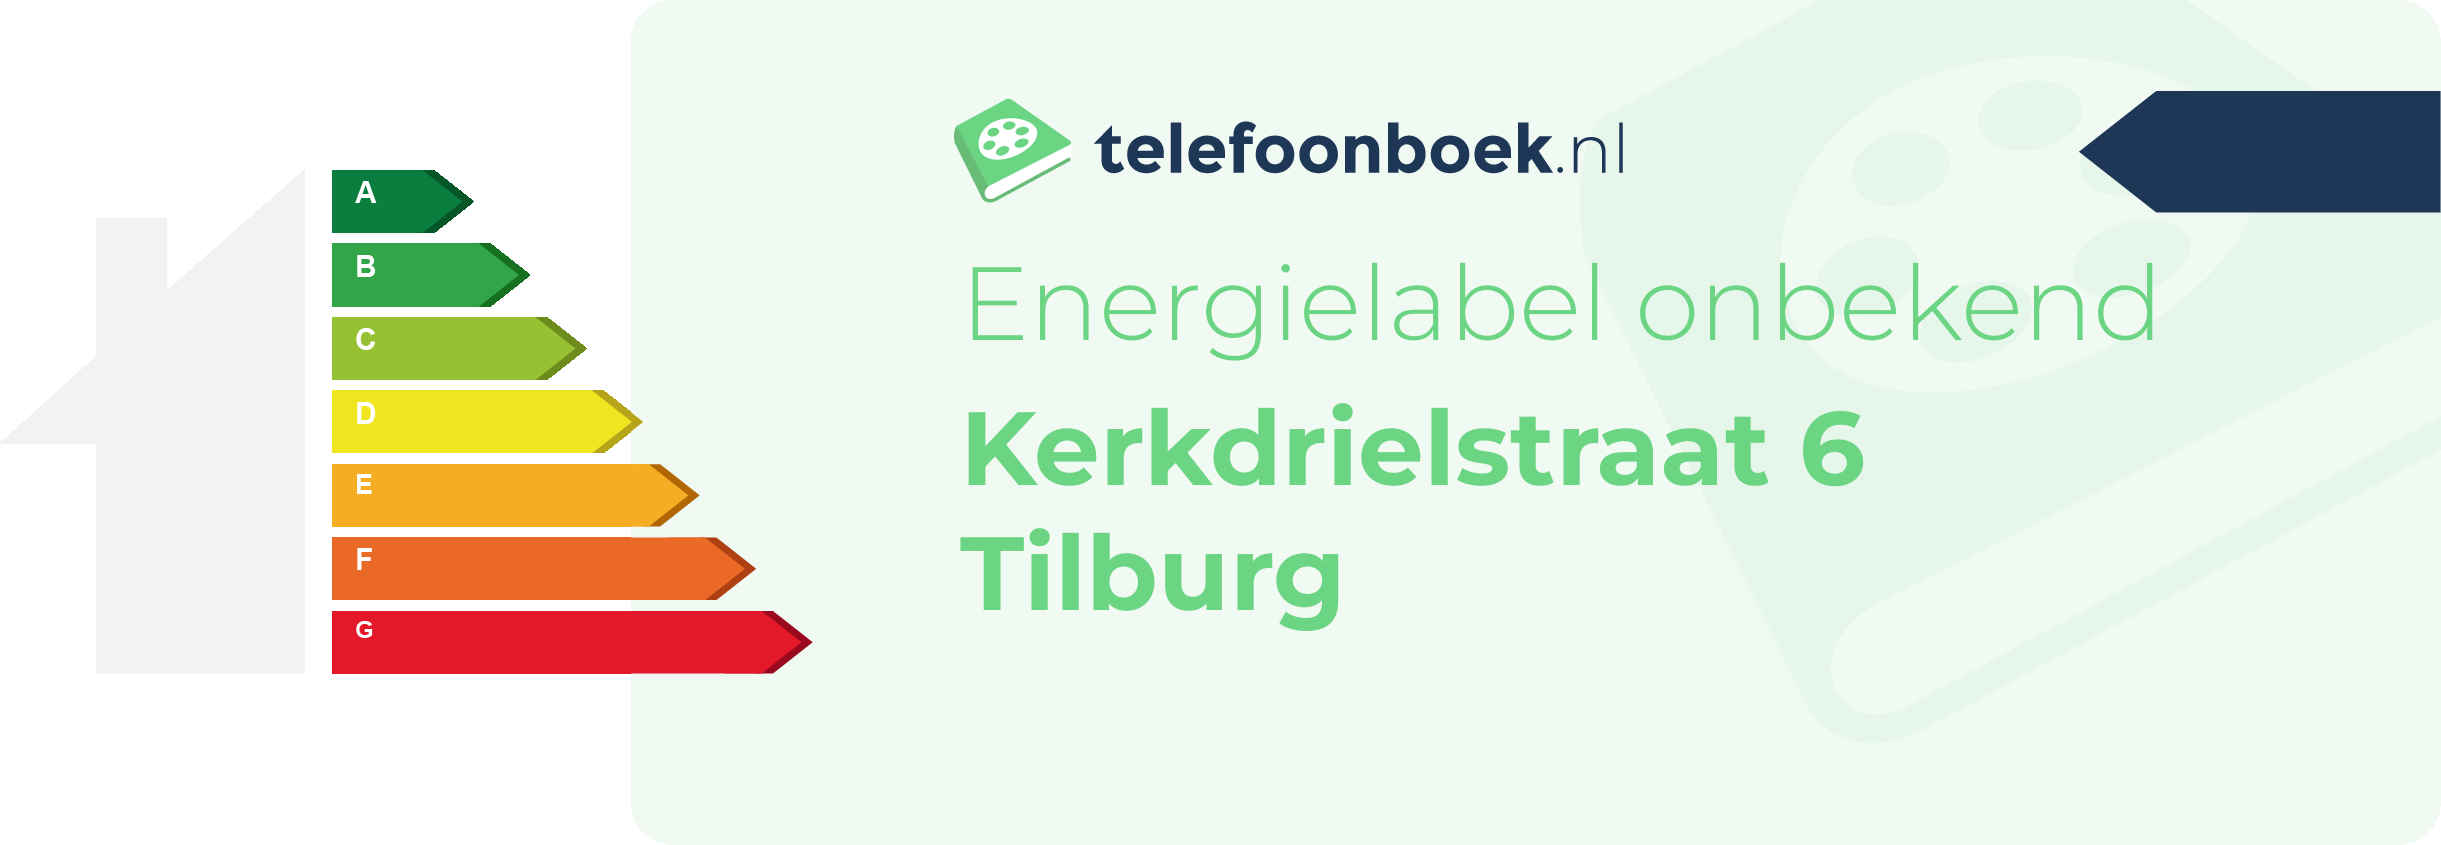 Energielabel Kerkdrielstraat 6 Tilburg